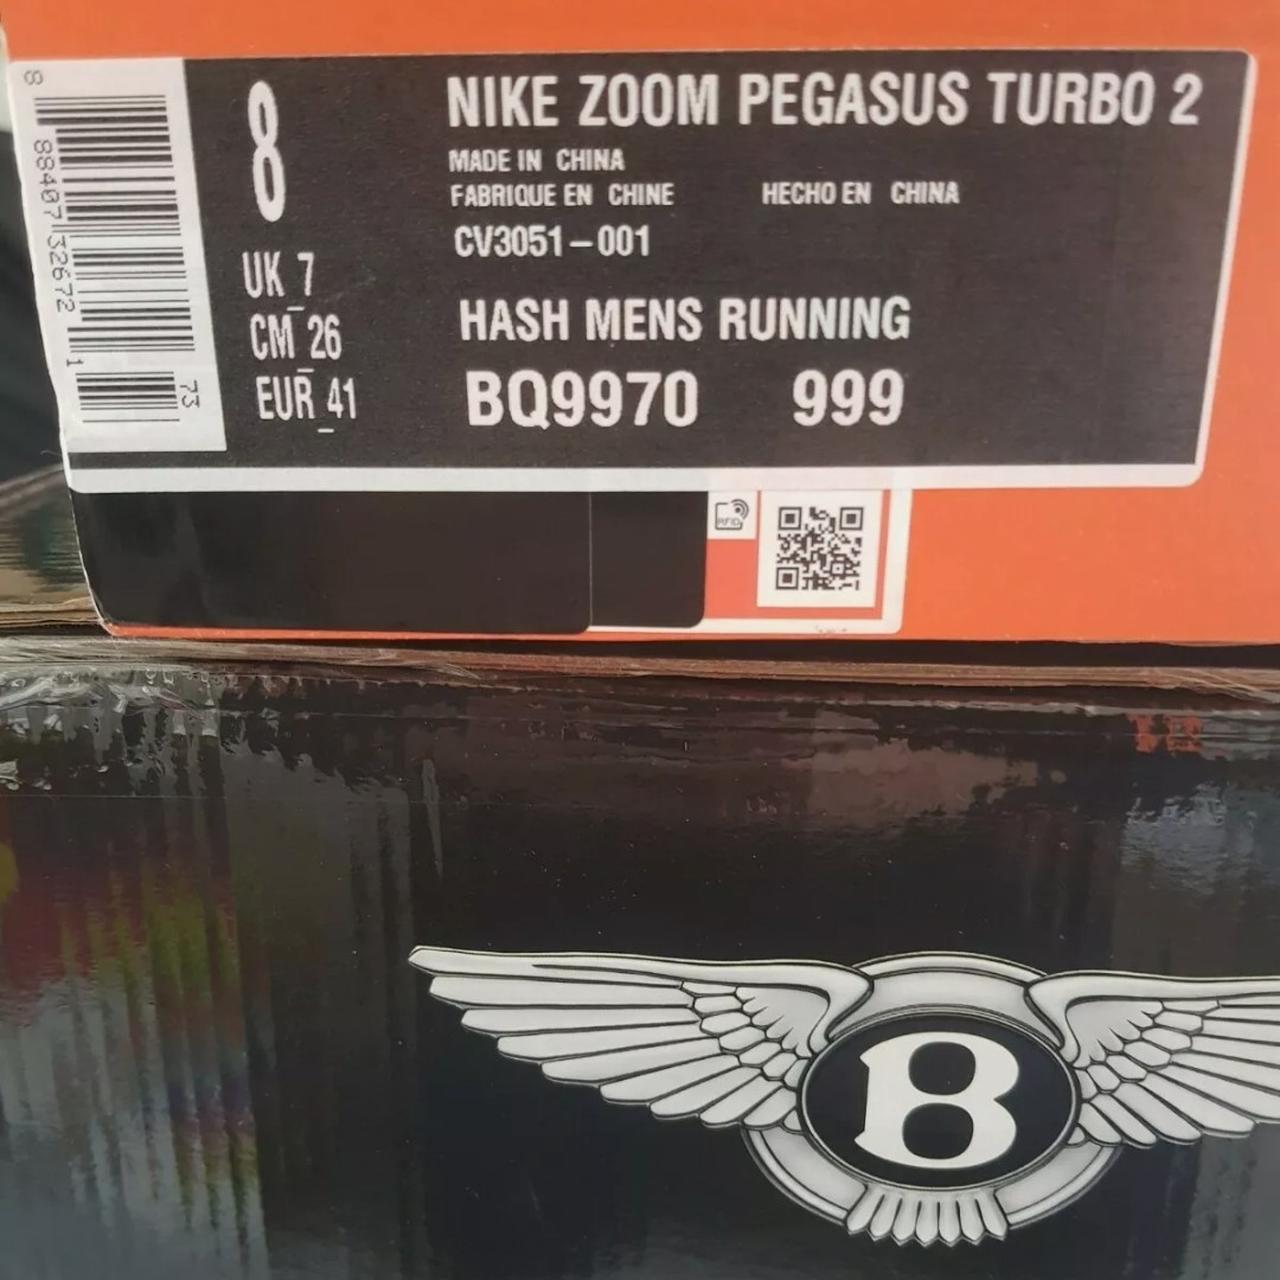 Specifiek Classificatie zoogdier Nike Zoom Pegasus Turbo II Equips Speed-Oriented... - Depop